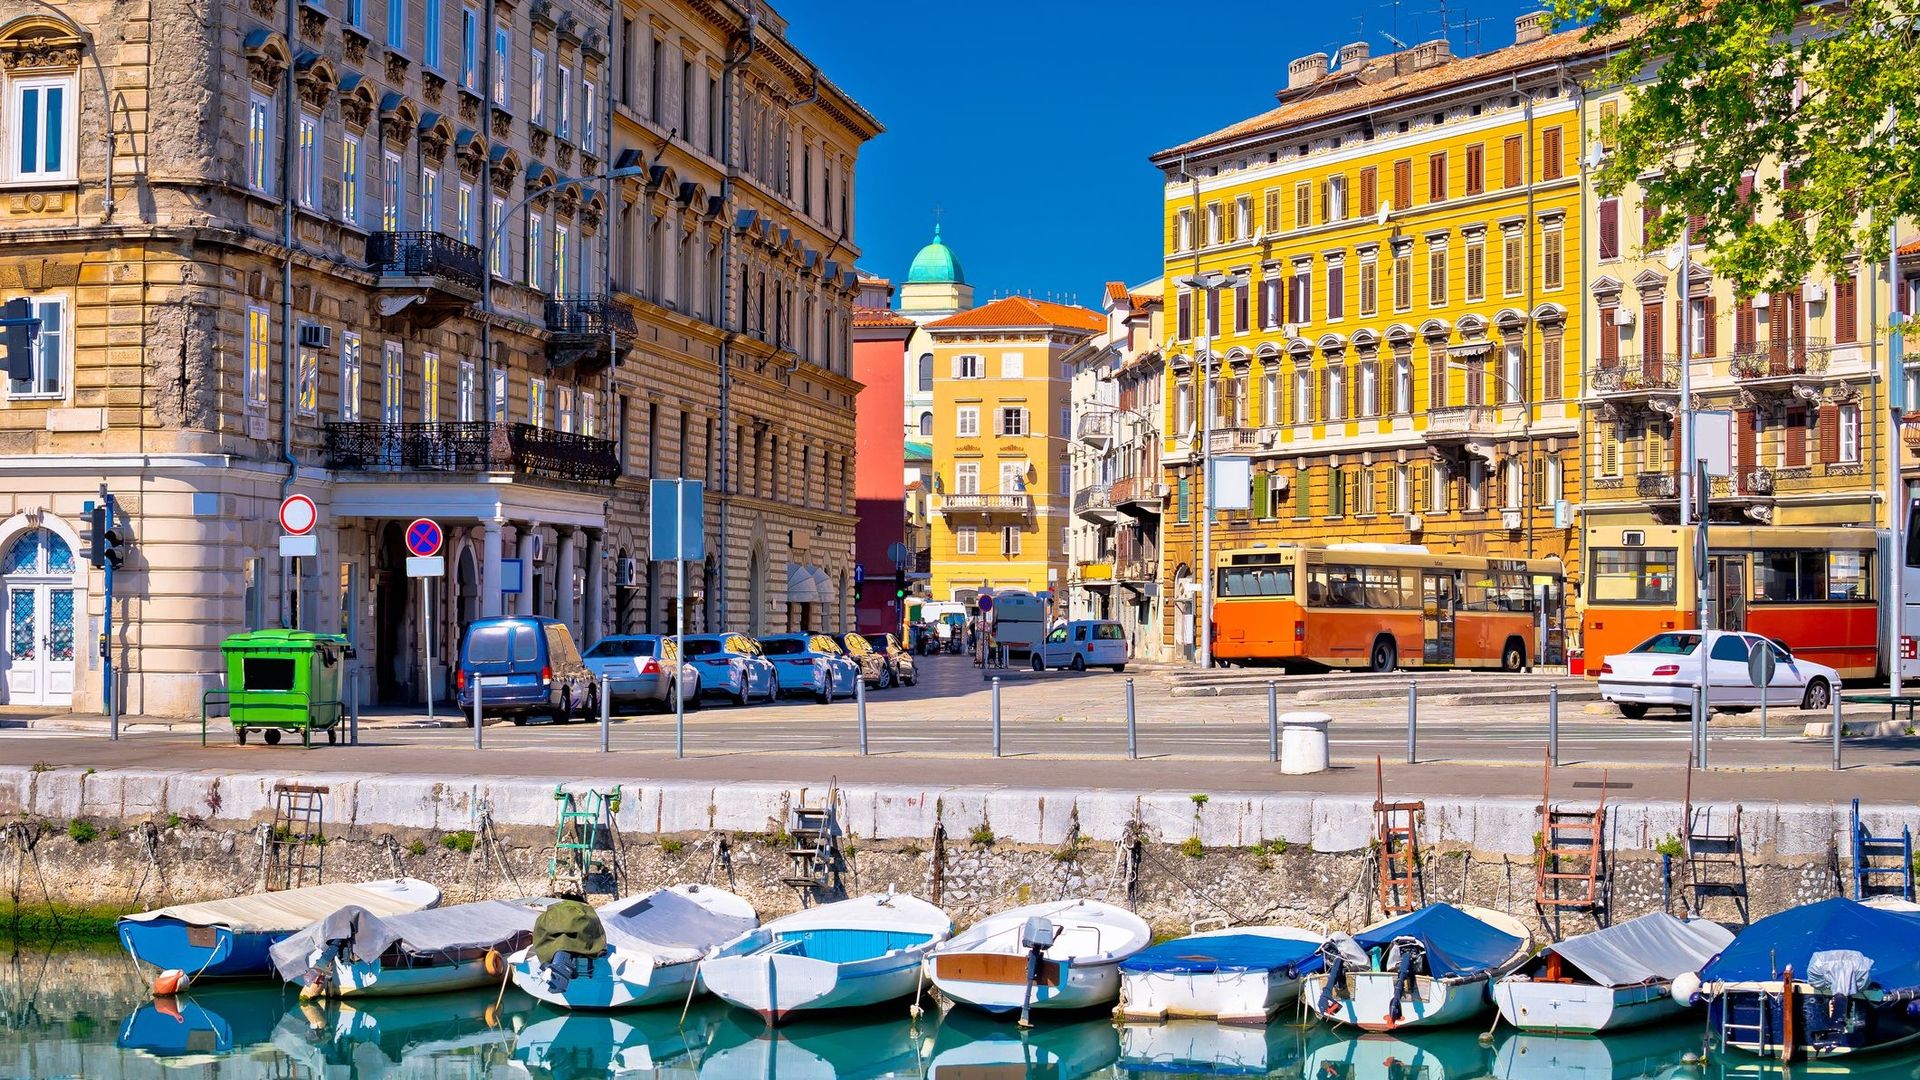 Croatie: Rijeka, Capitale européenne de la culture 2020, lance ses festivités.